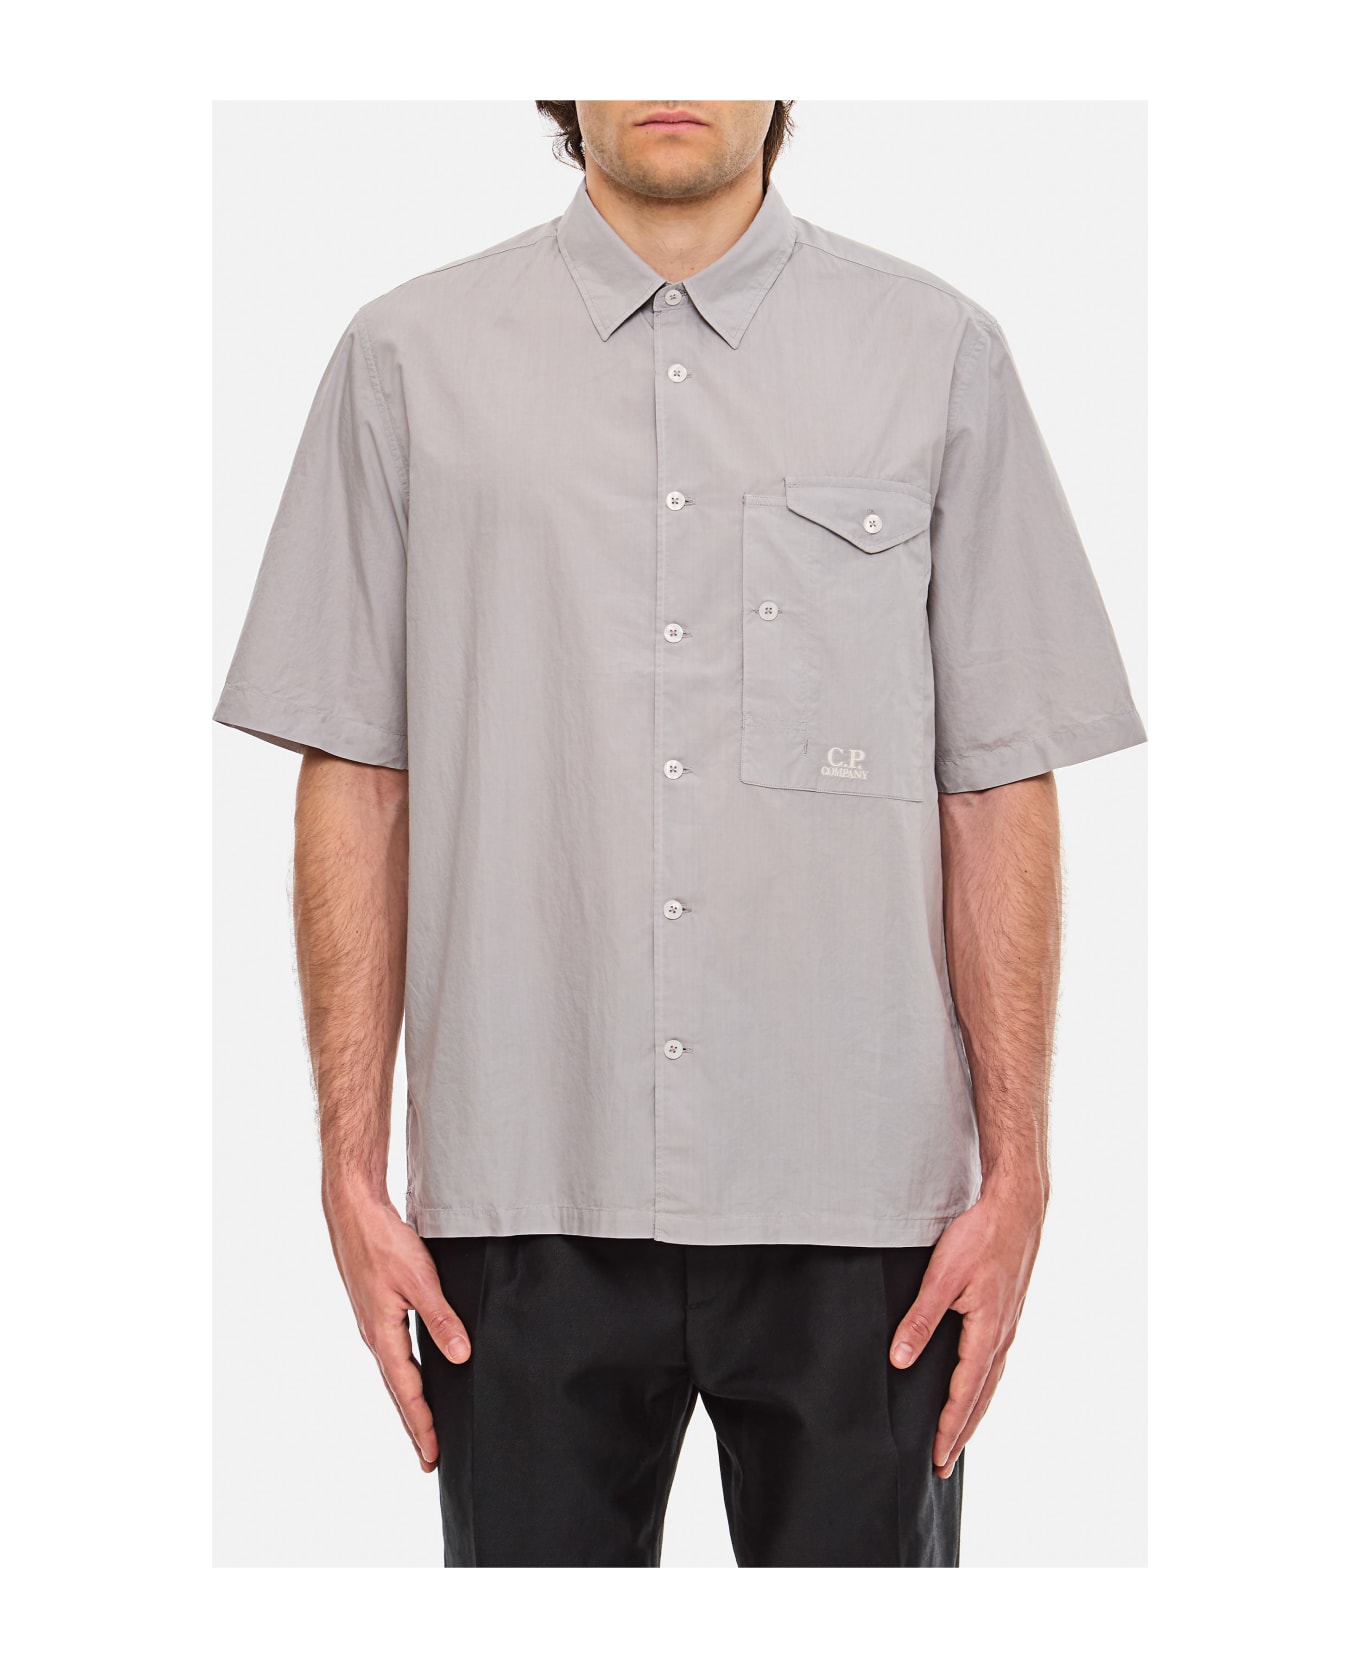 C.P. Company Popeline Short Sleeved Shirt - Grey